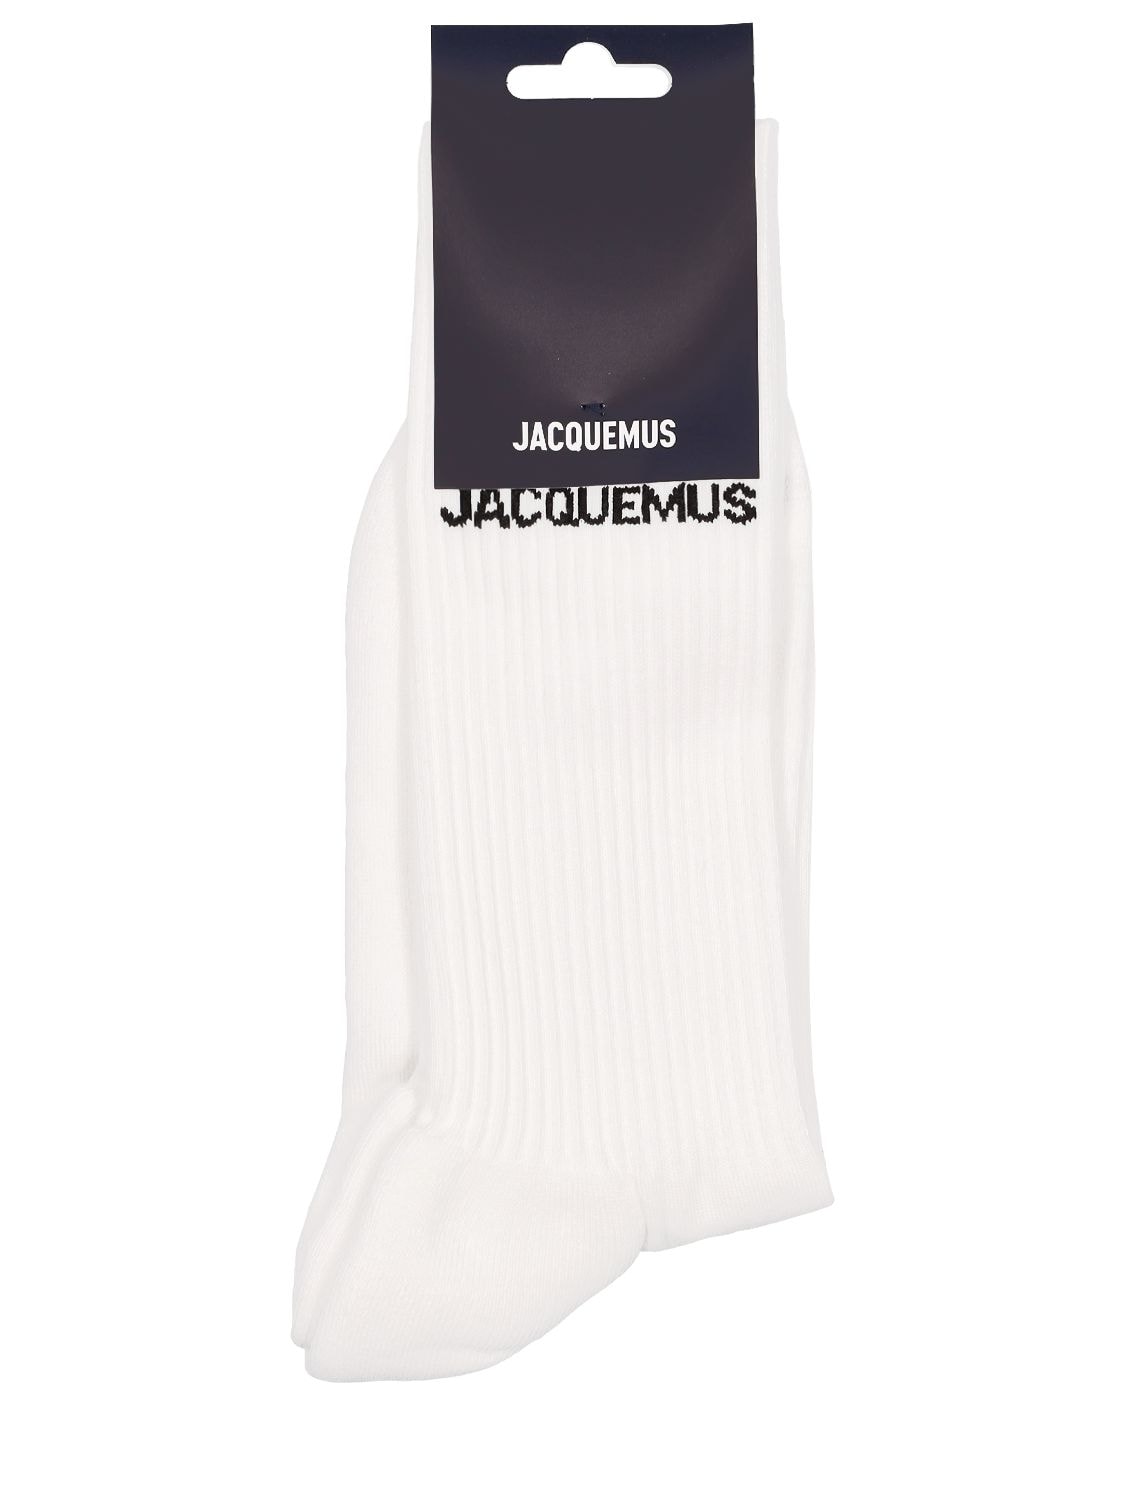 Jacquemus Les Chaussettes Cotton Blend Socks In White